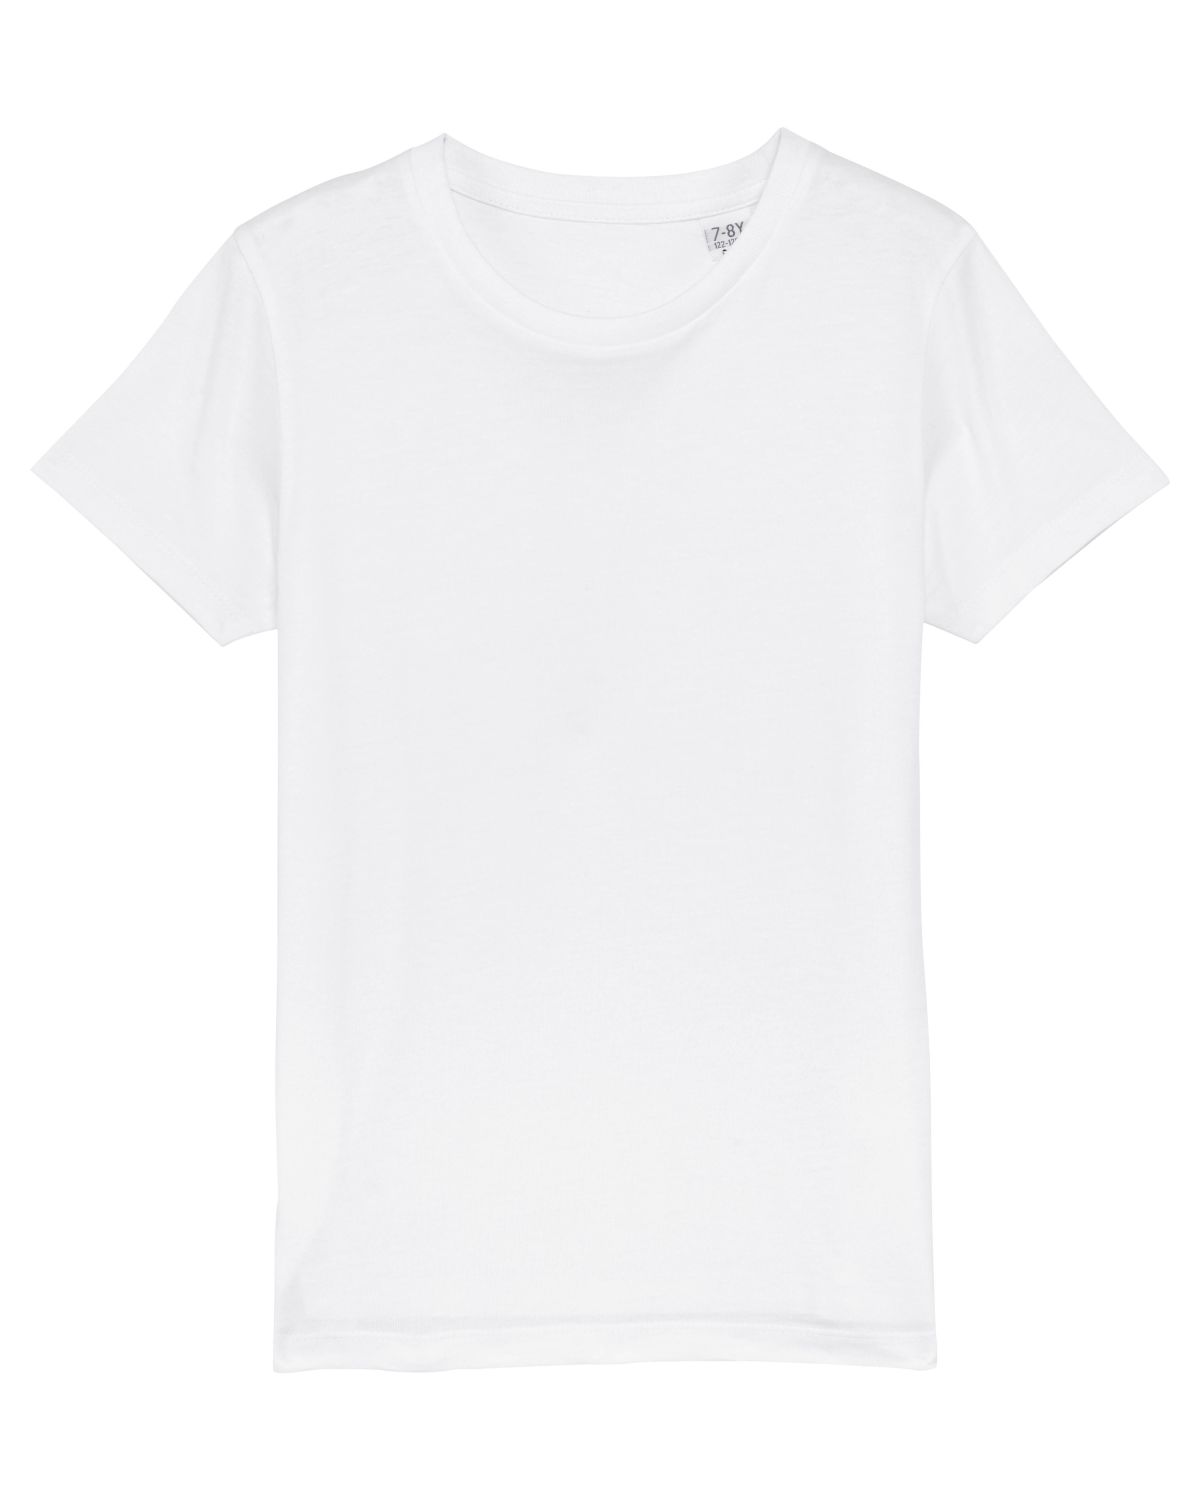 Stanley/Stella's - Mini Creator T-shirt - White